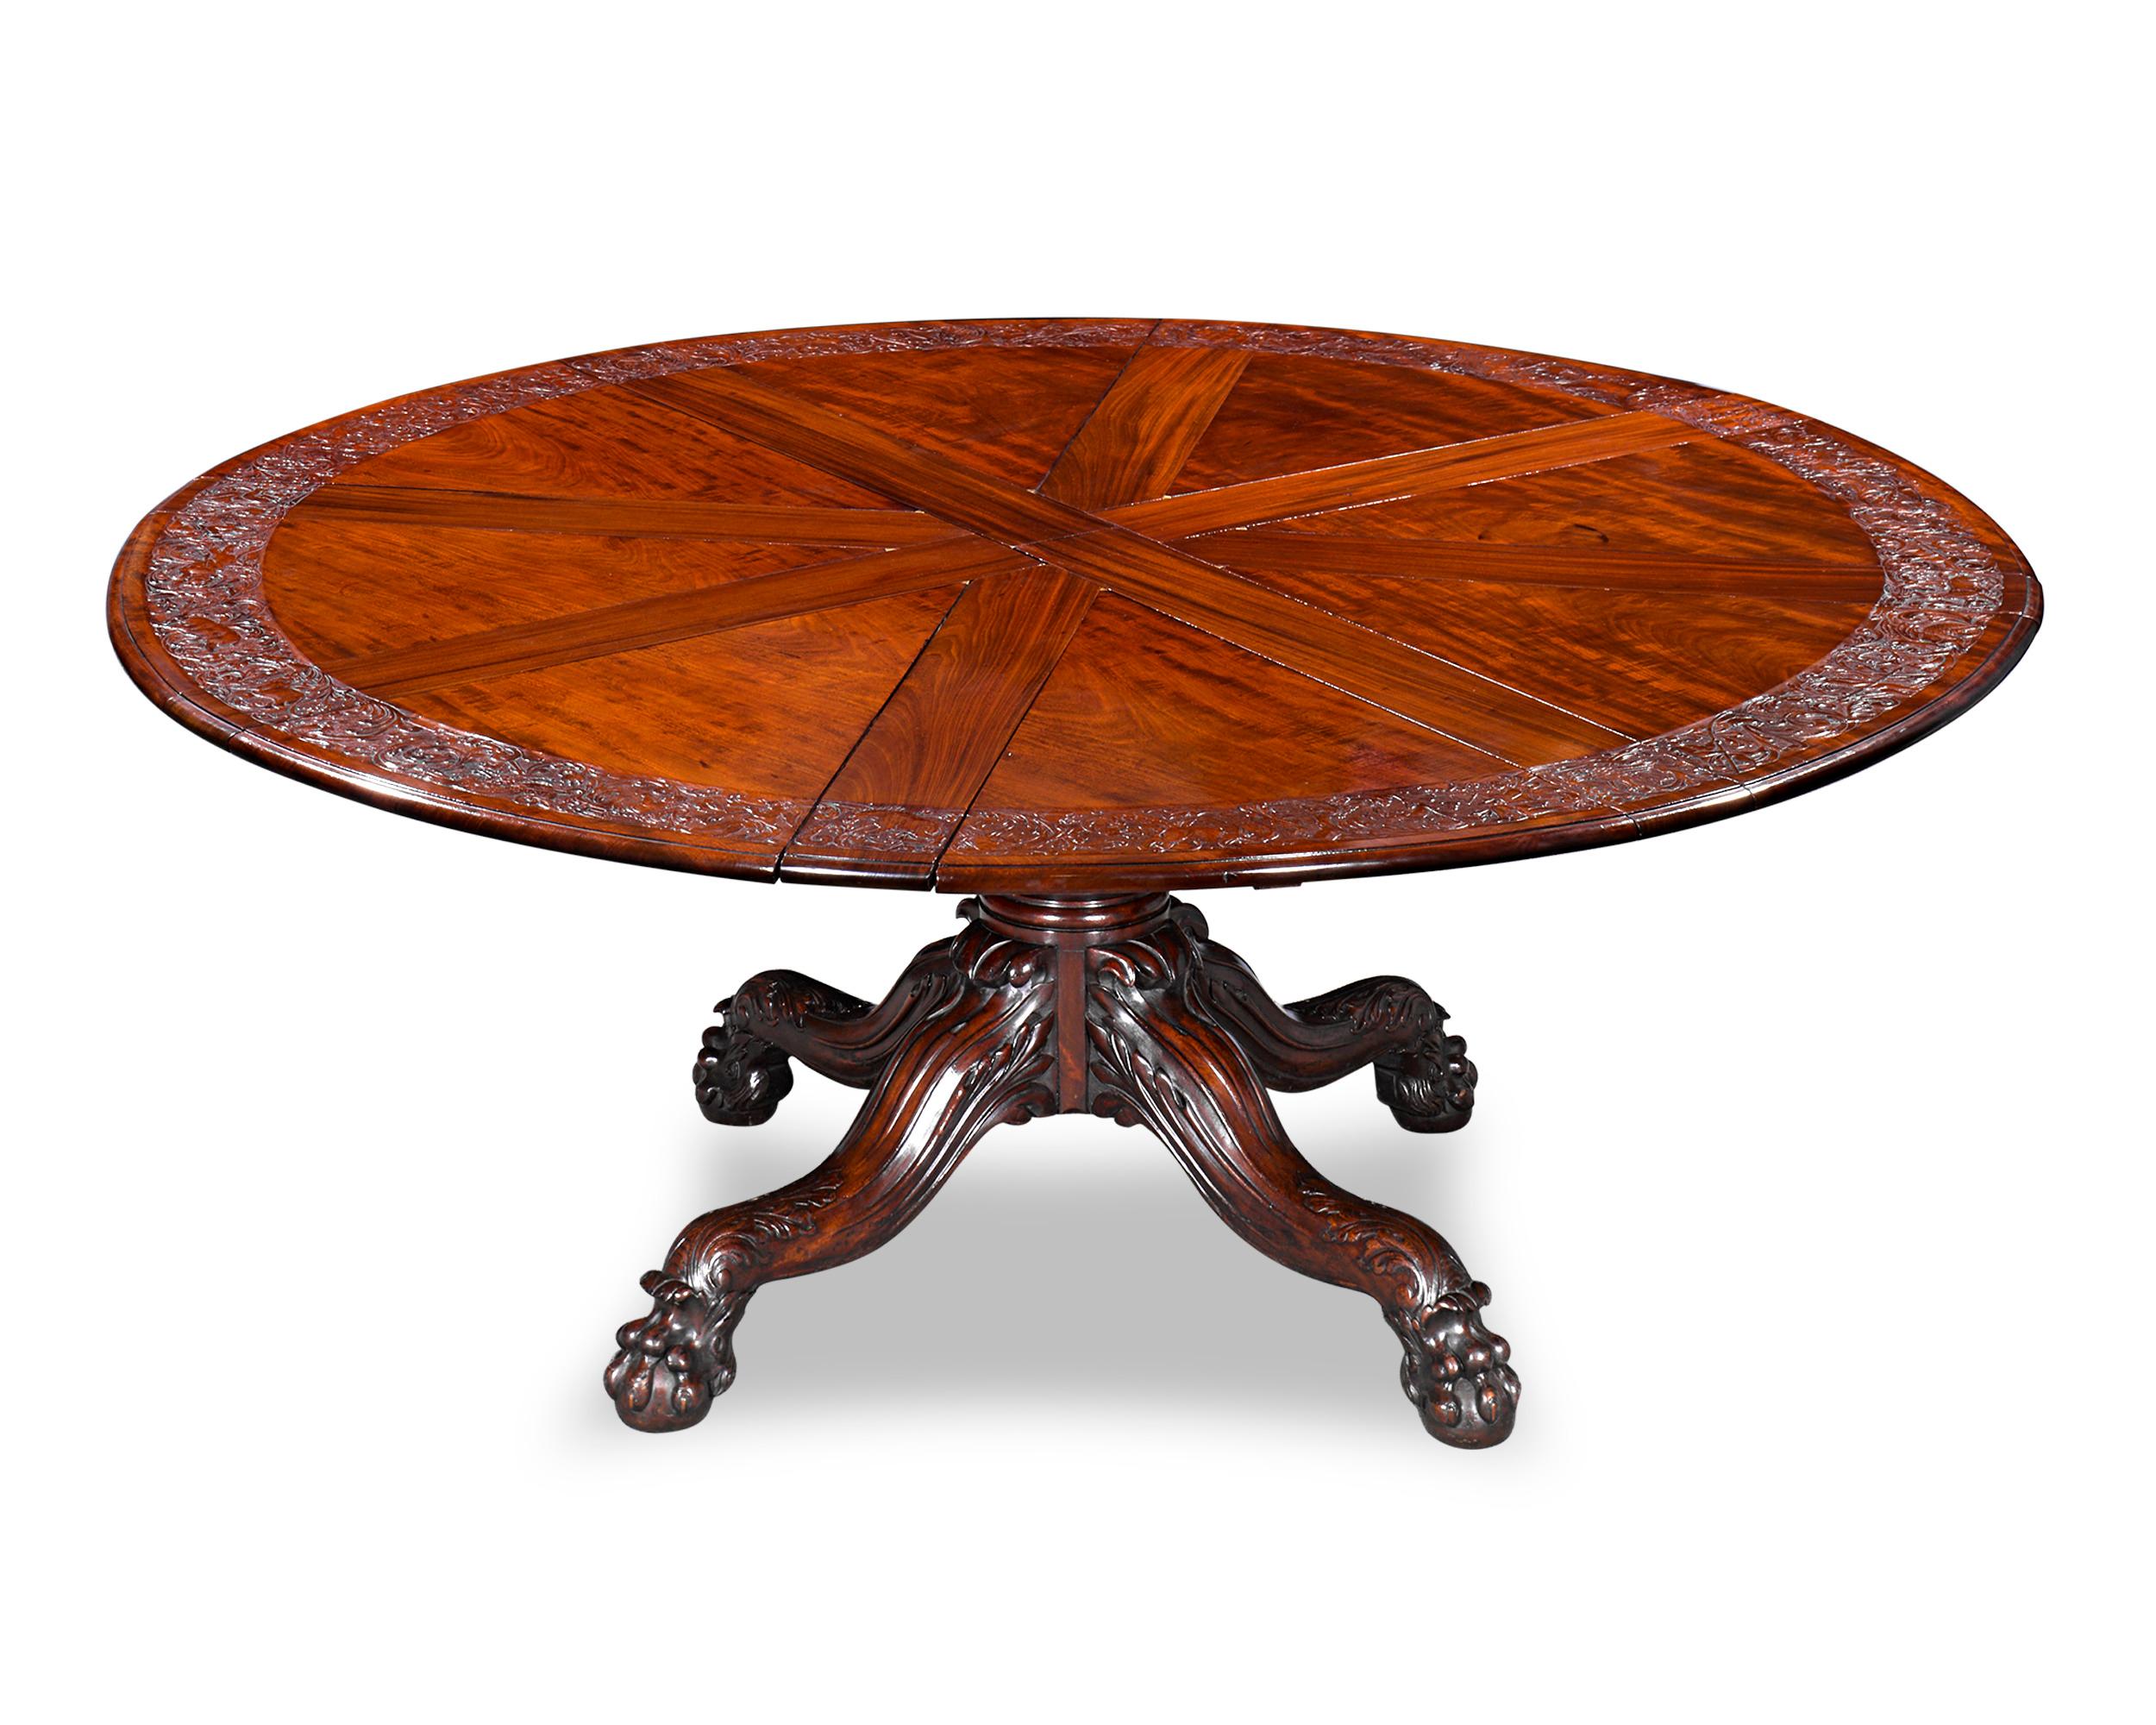 Dieser außergewöhnlich seltene runde, ausziehbare Esstisch wurde von Robert Jupe entworfen und von der englischen Tischlerei Johnstone & Jeanes, den Nachfolgern von Johnstone, Jupe & Co, hergestellt. Dieser Tisch ist einer von nur wenigen, die von